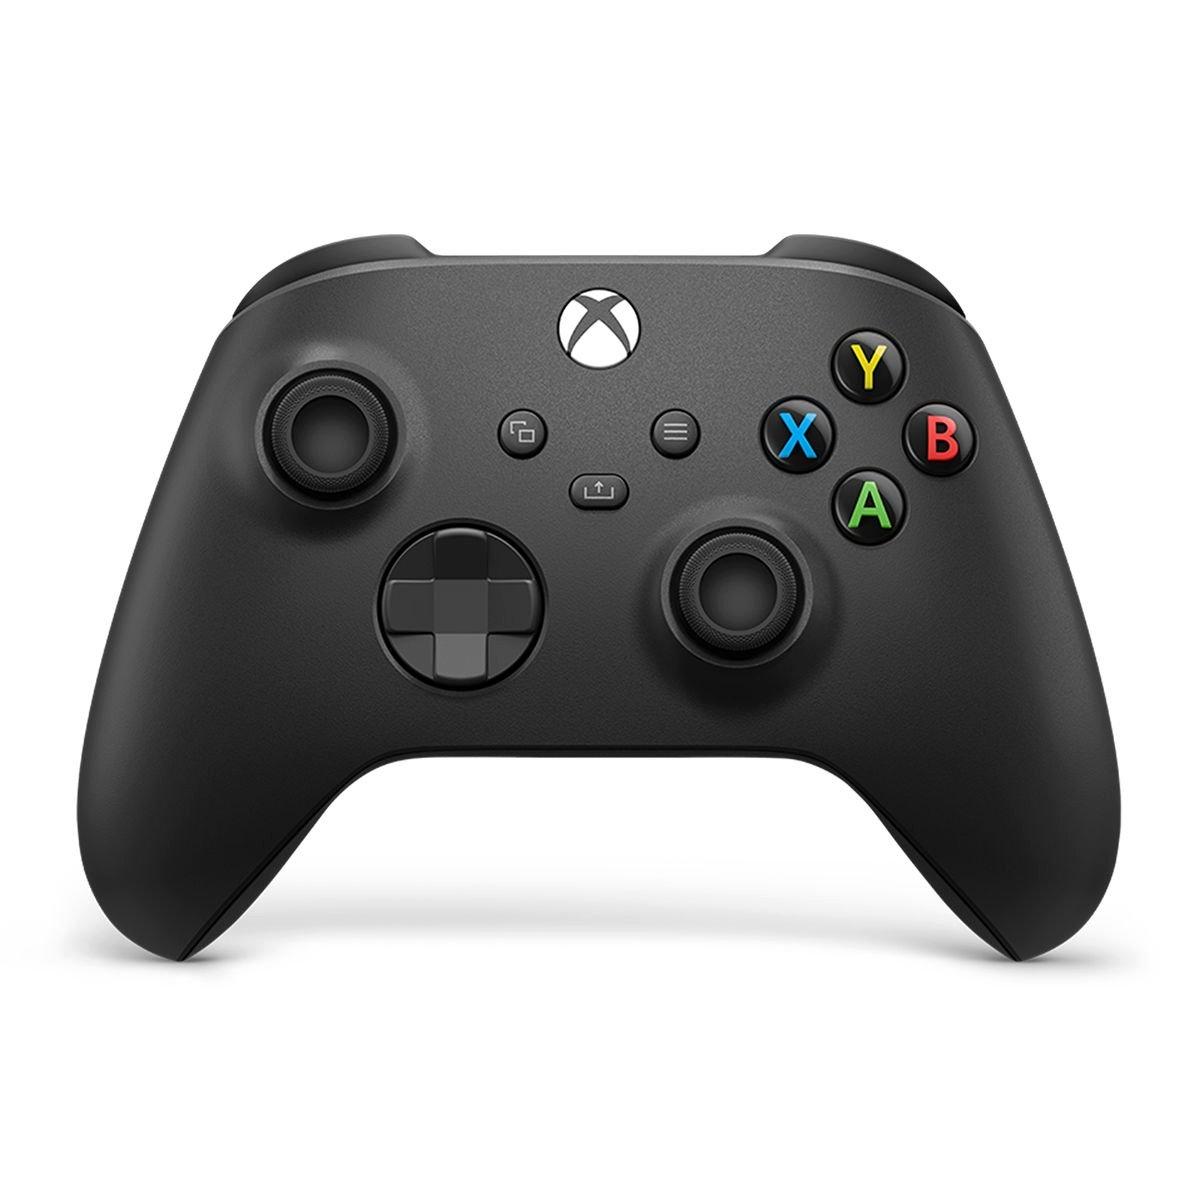 Forza Horizon 5 Premium Edition - Xbox One, Xbox Series X,S